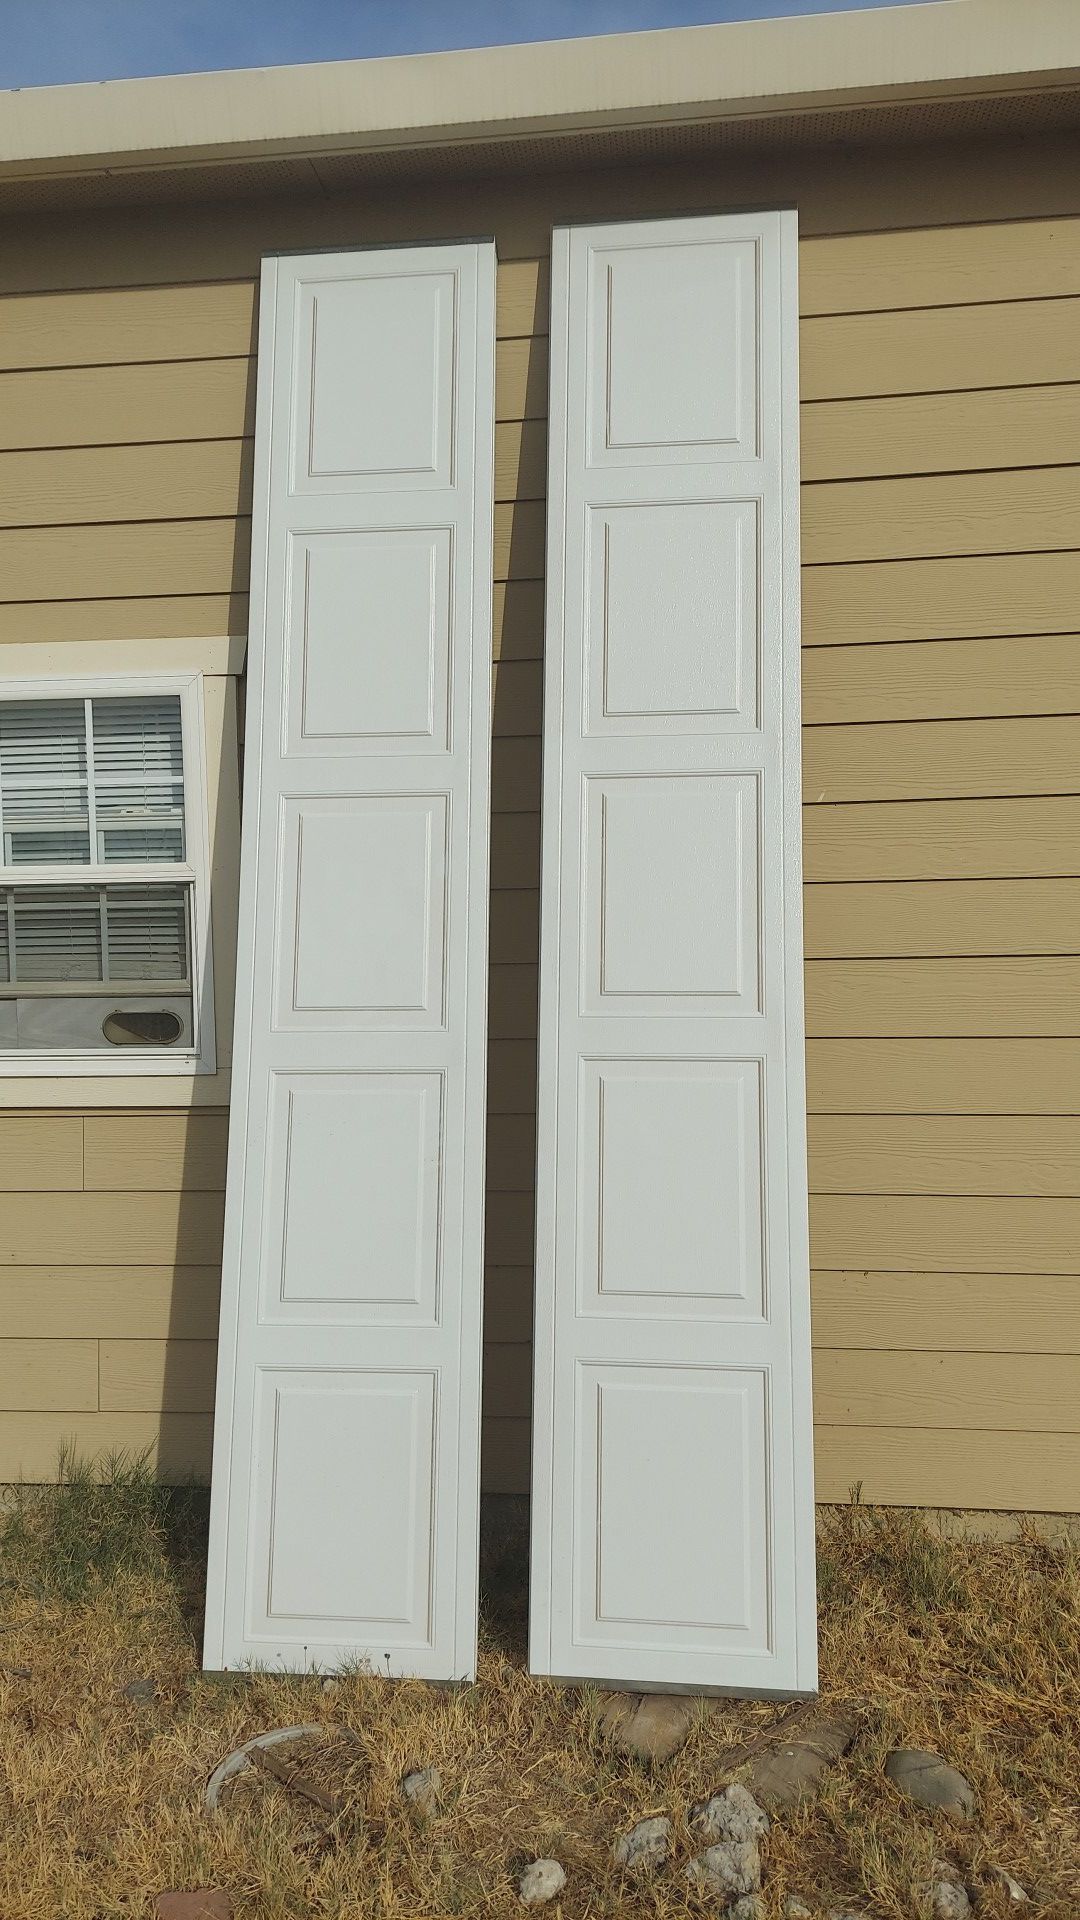 2 garage door panels brand new . Dimensions 21"x 10'